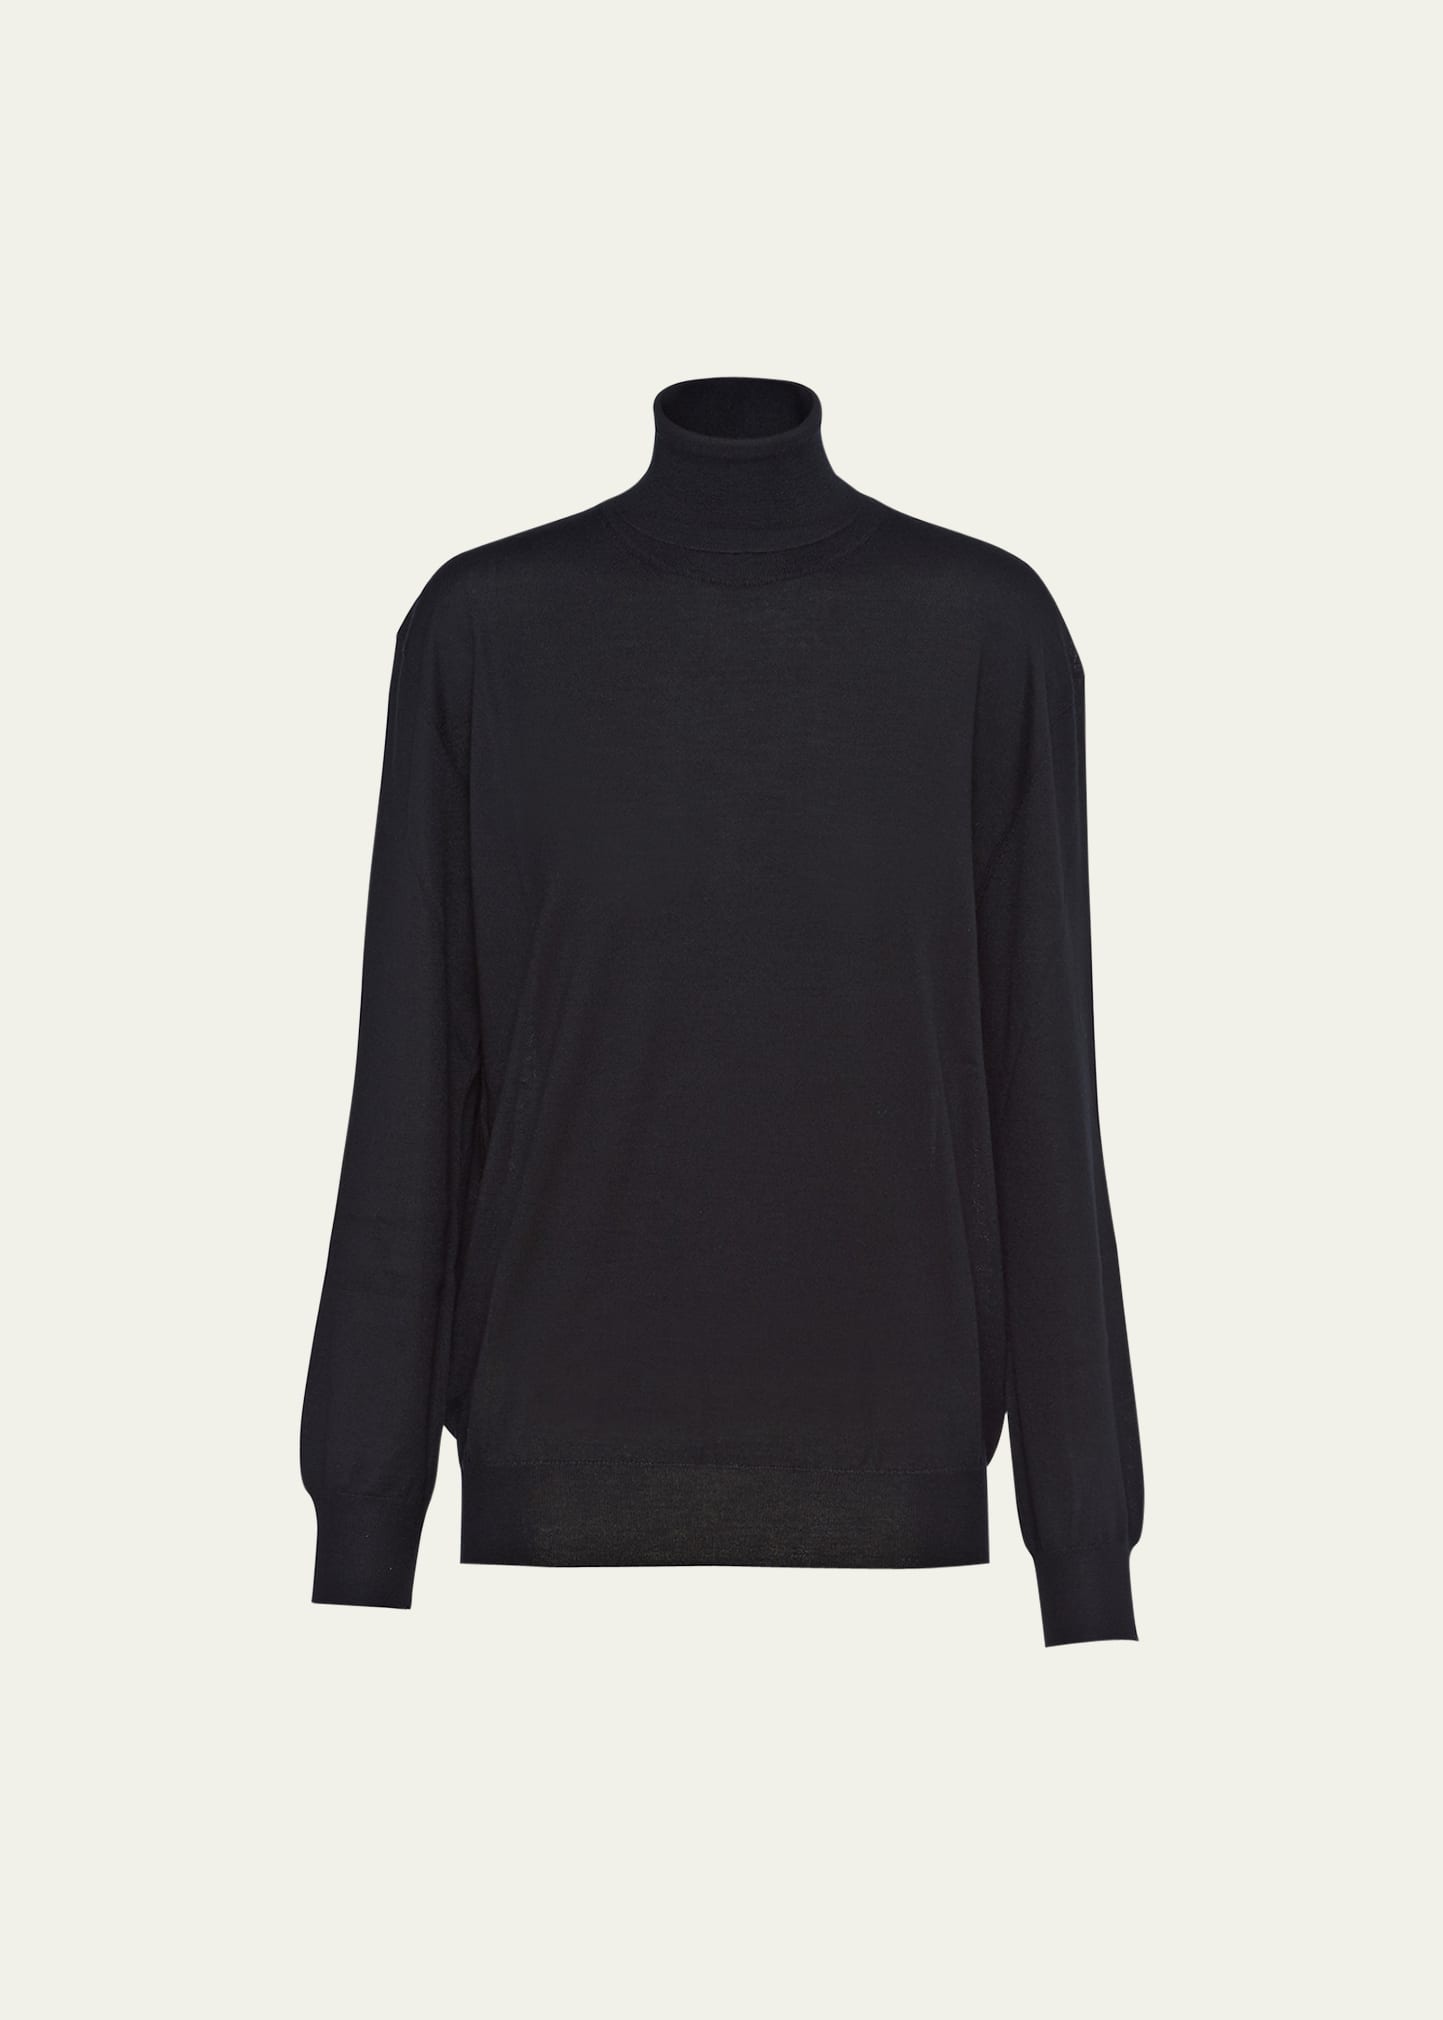 Prada Superfine Cashmere Knit Turtleneck In Black